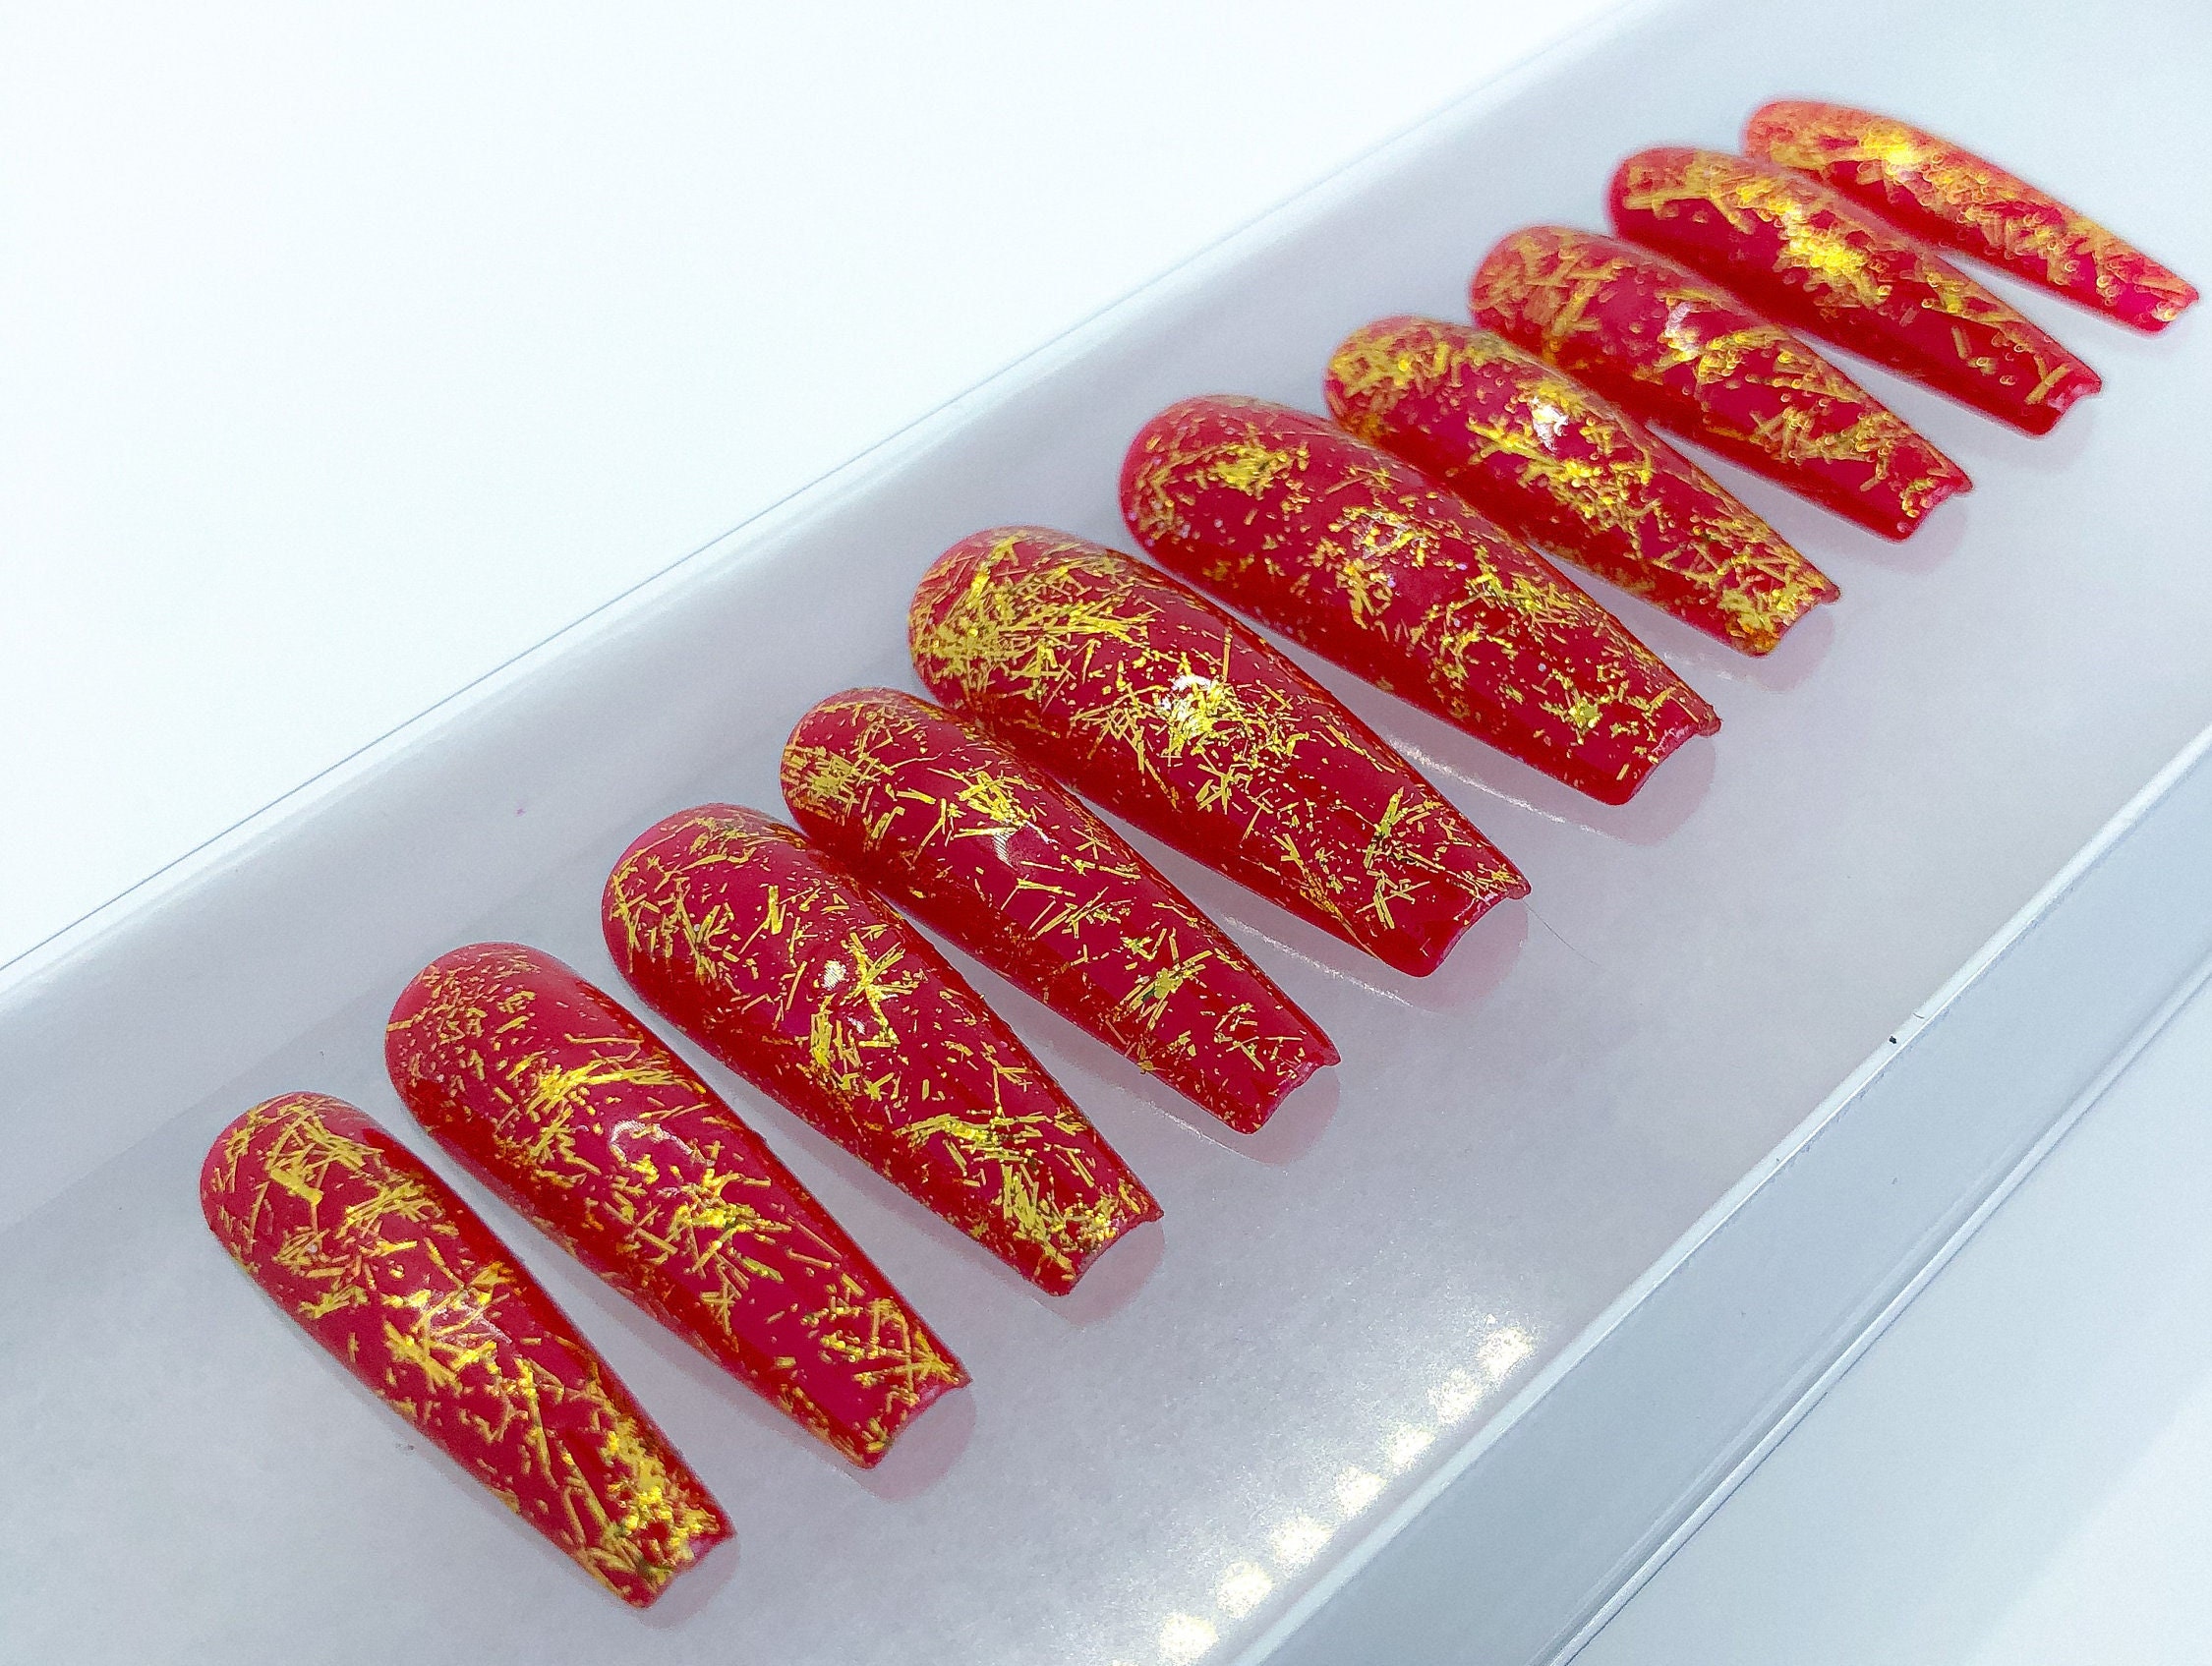 Red Nail Art Jewelry Goldfish Money Purse Shaped New Year Nail Art